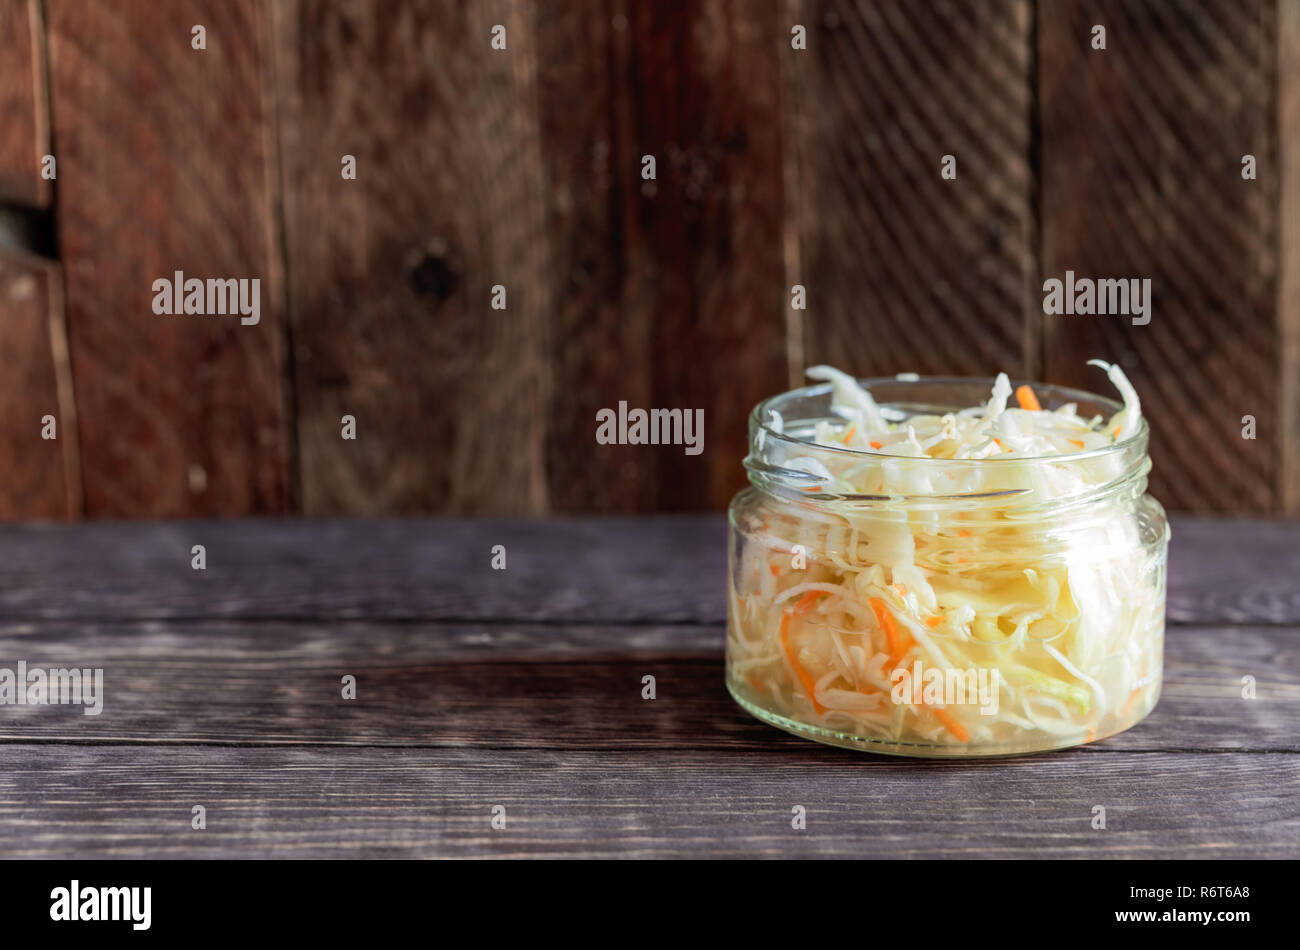 Glass jar with sauerkraut is standing on dark wooden background. Stock Photo